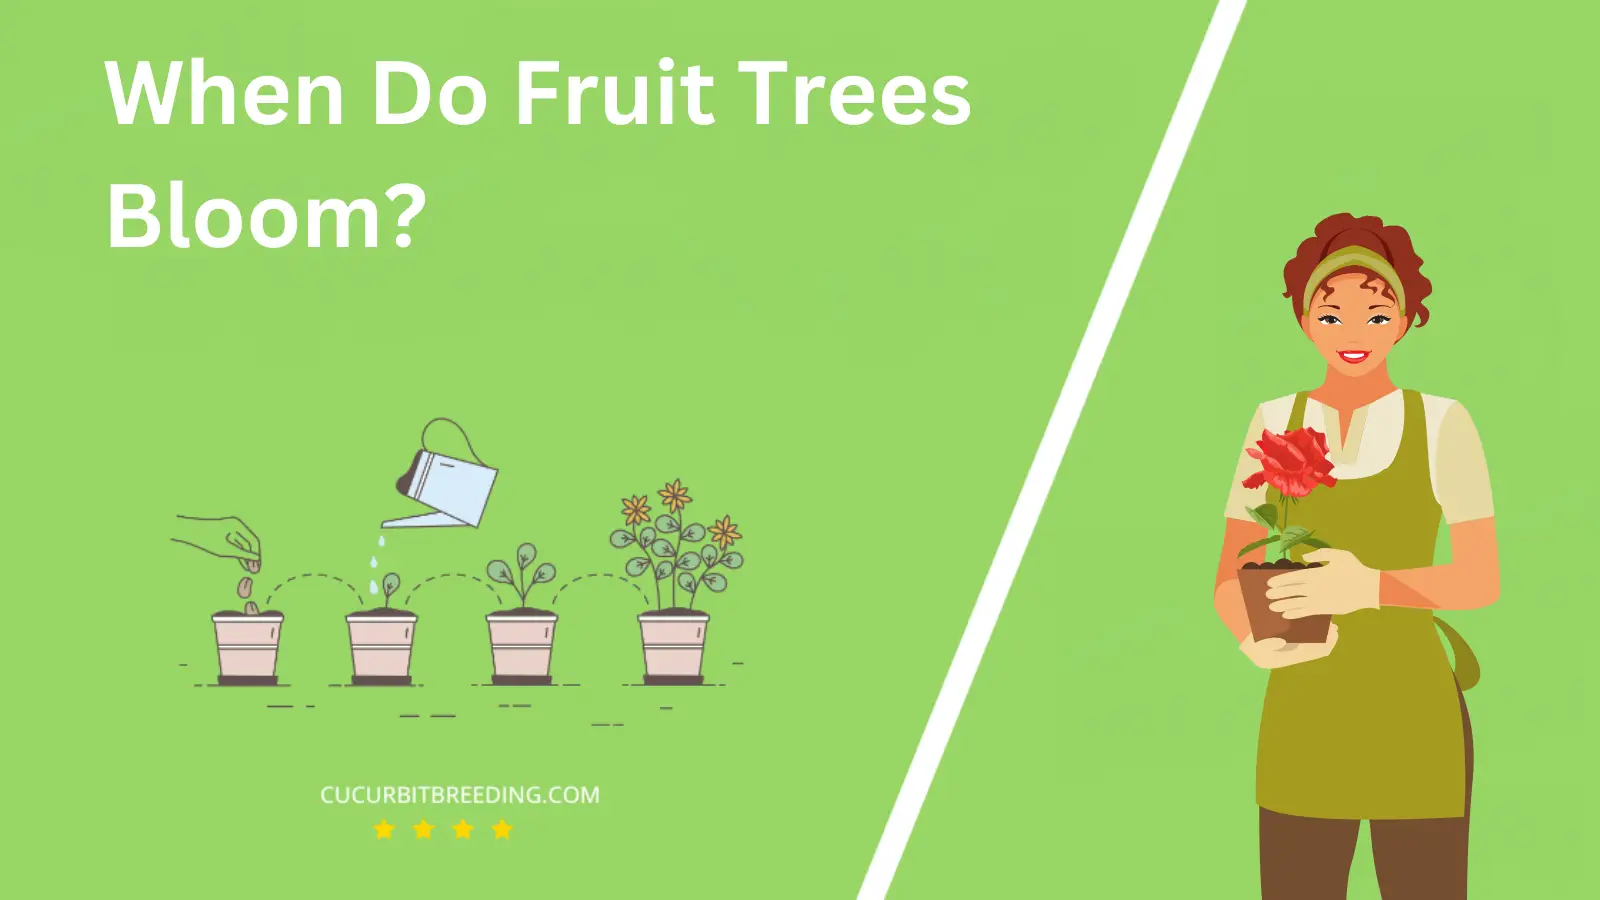 When Do Fruit Trees Bloom?